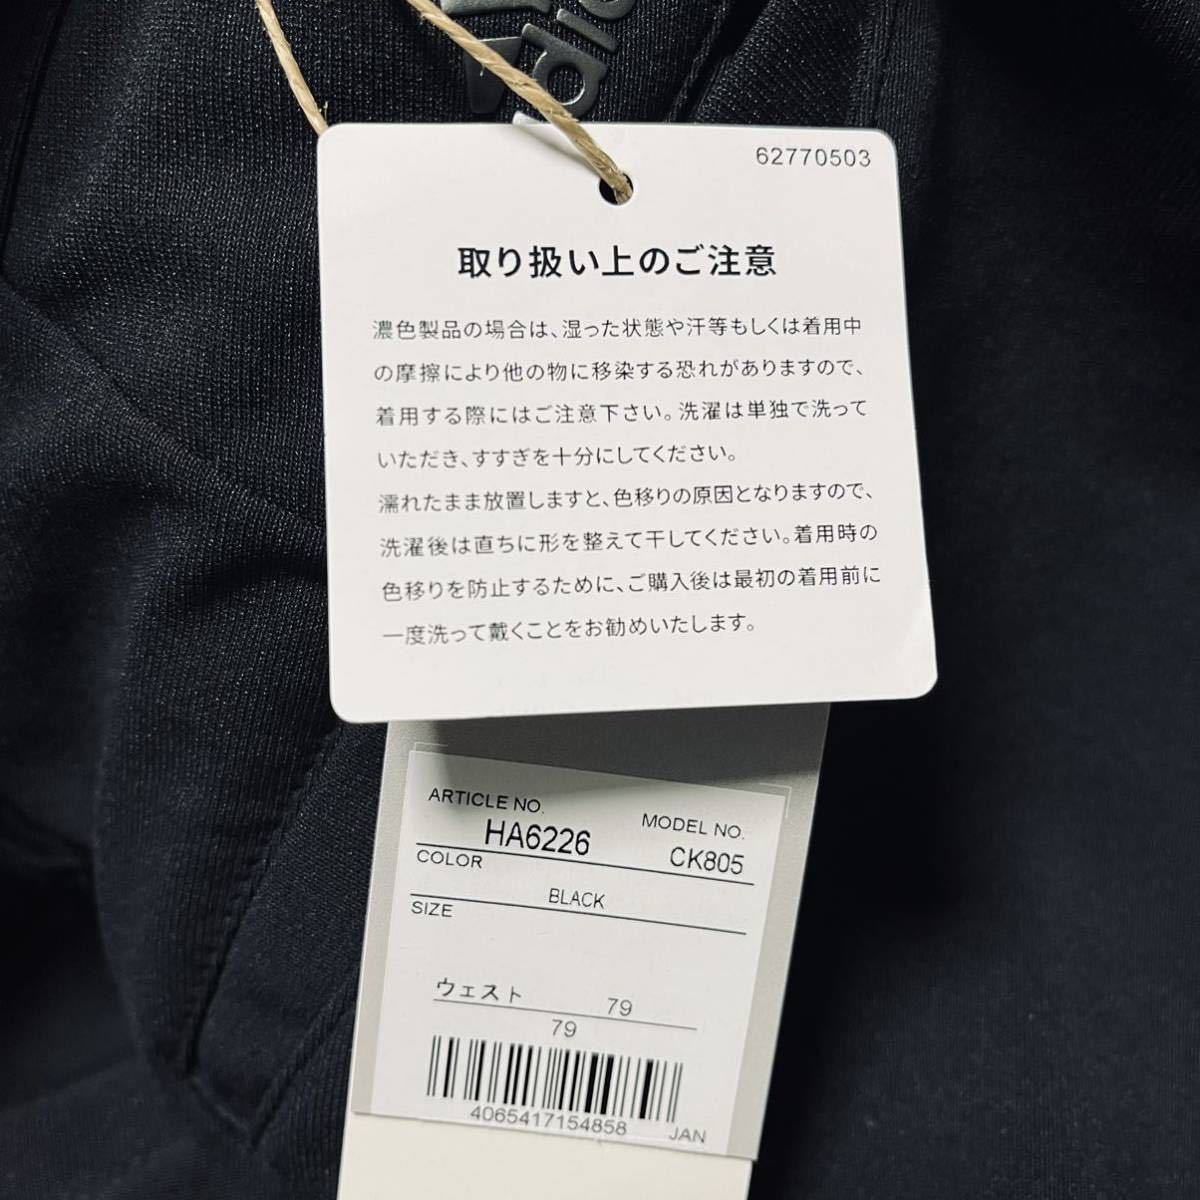 W81cm обычная цена 11,500 иен Adidas Golf s Lee полоса s брюки-карго длинный стрейч легкий весна осень новый товар бесплатная доставка черный чёрный 